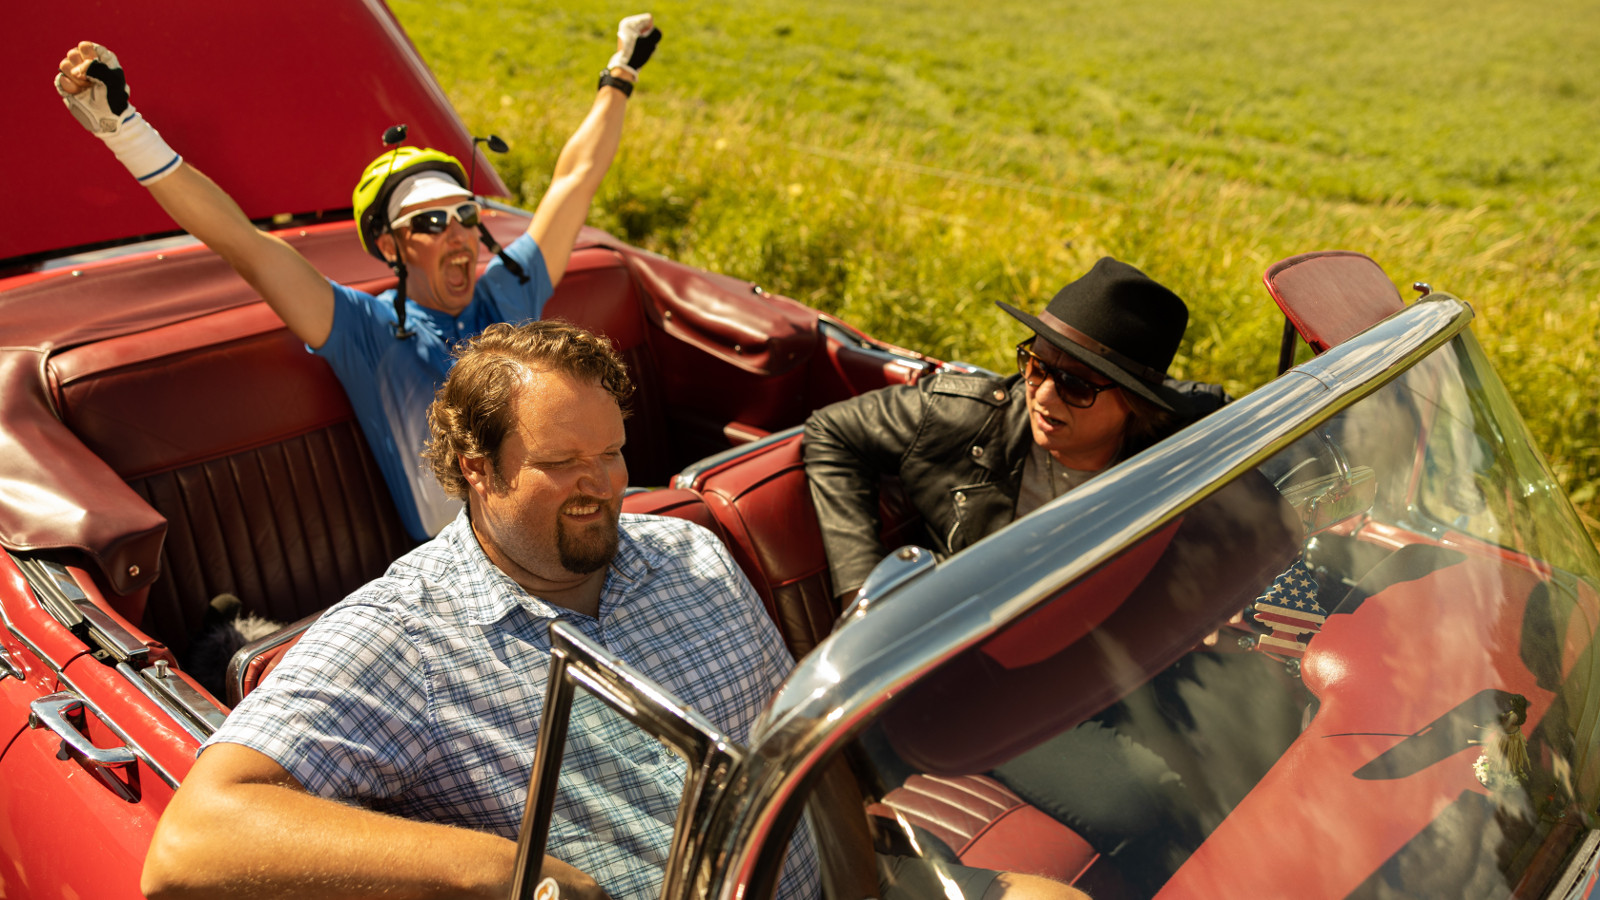 Kuvassa ovat punaisessa avoautossa etupenkillä ohjaajana Jaajo Linnoinmaa ja Sami Hedberg sekä takapenkillä Aku Hirviniemi kädet ojennettuina ylöspäin.  Kuva on otettu kesällä.